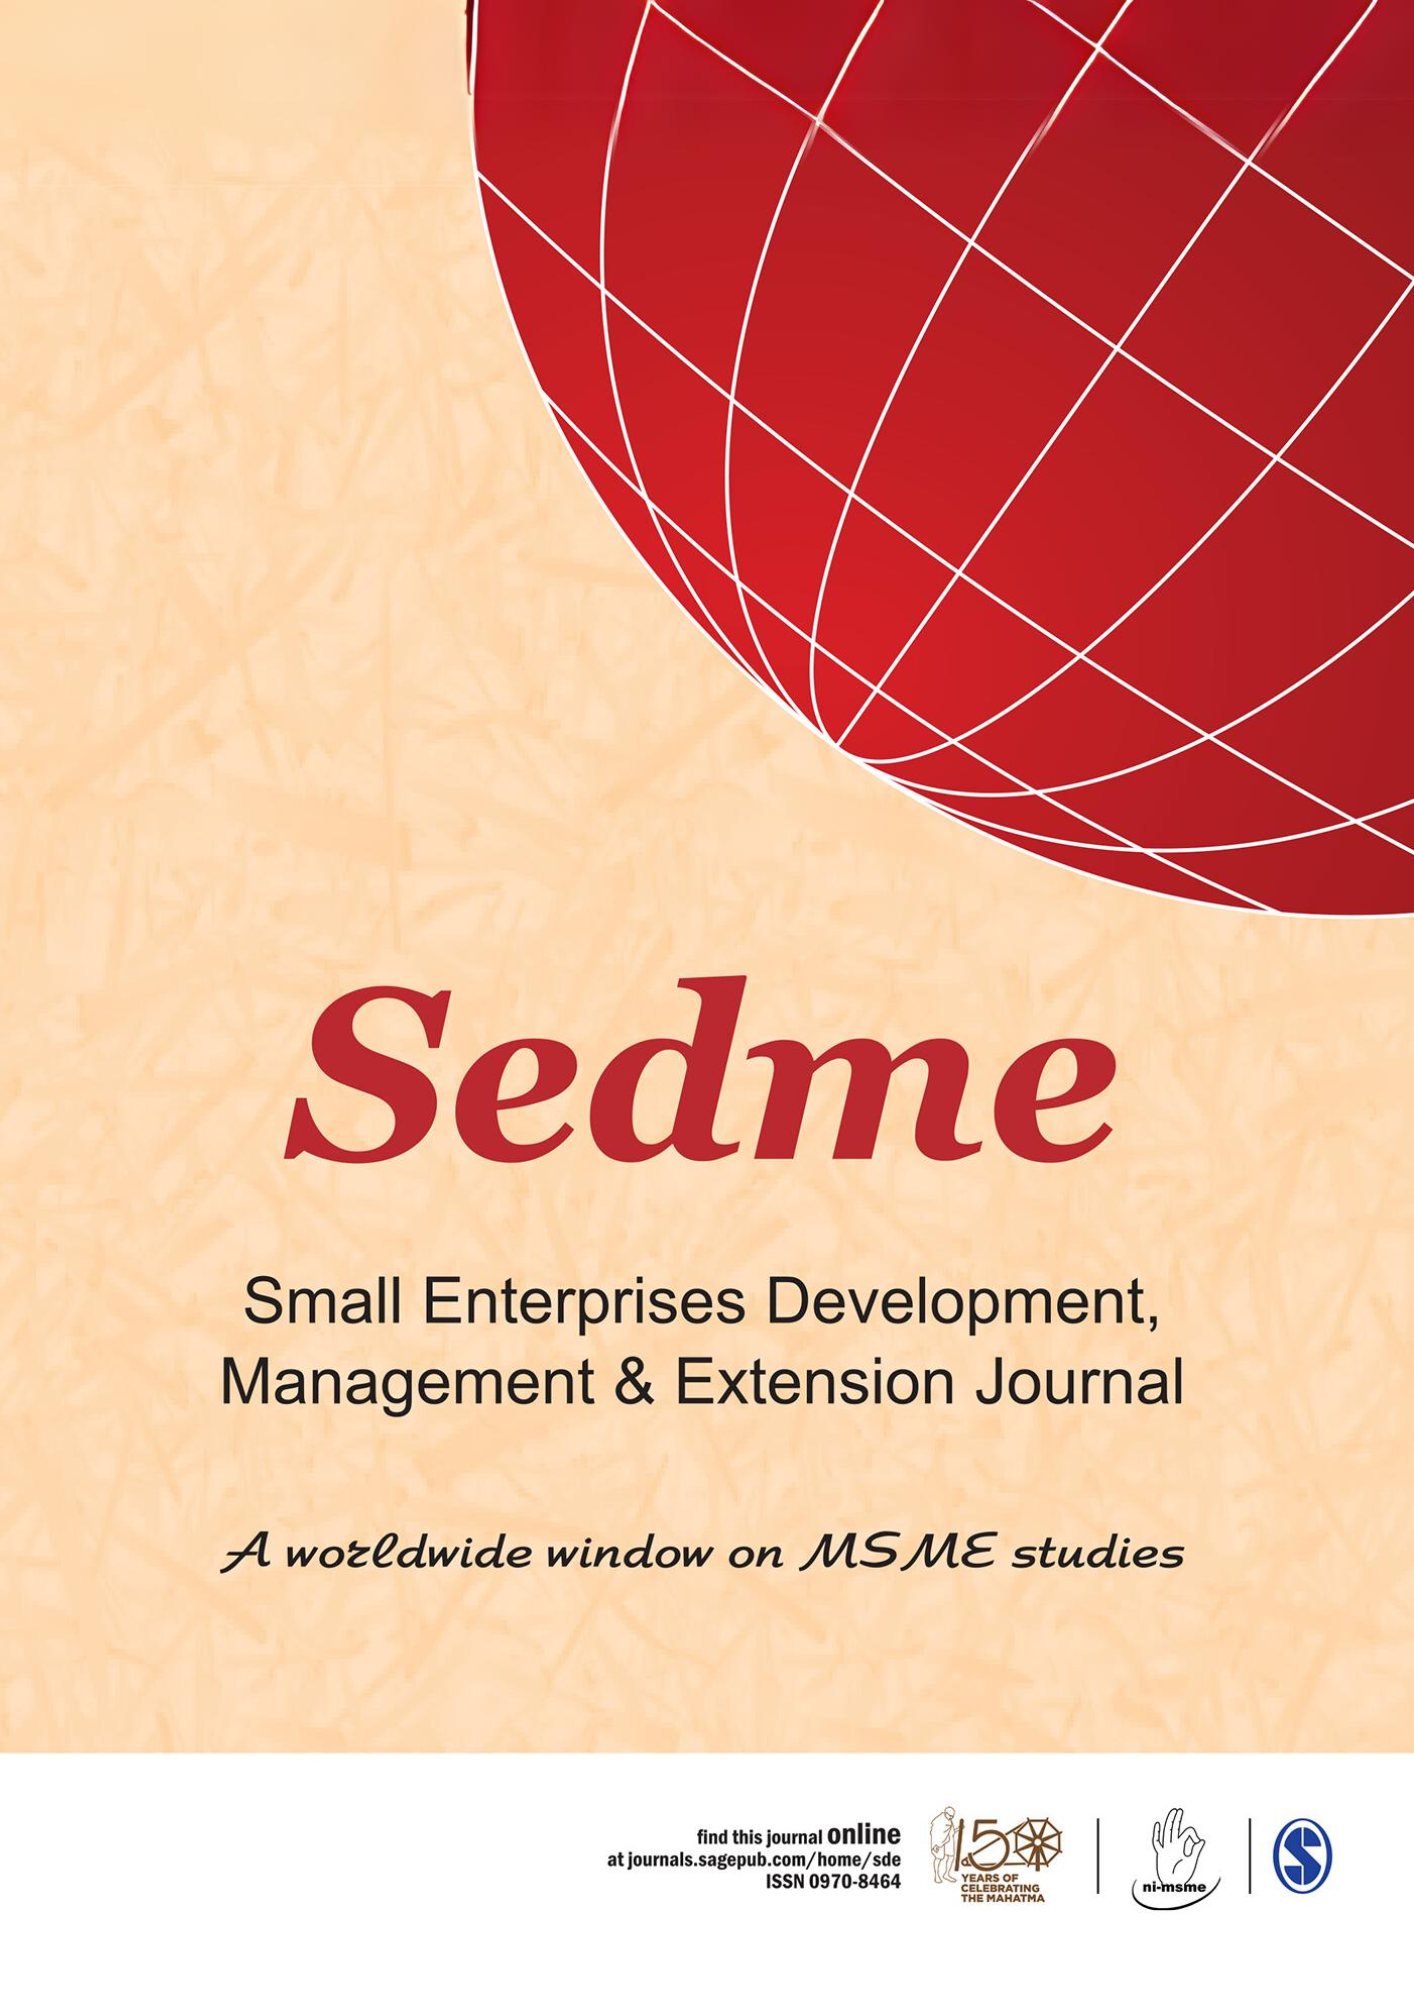 Small Enterprises Development Management and Extension (SEDME)